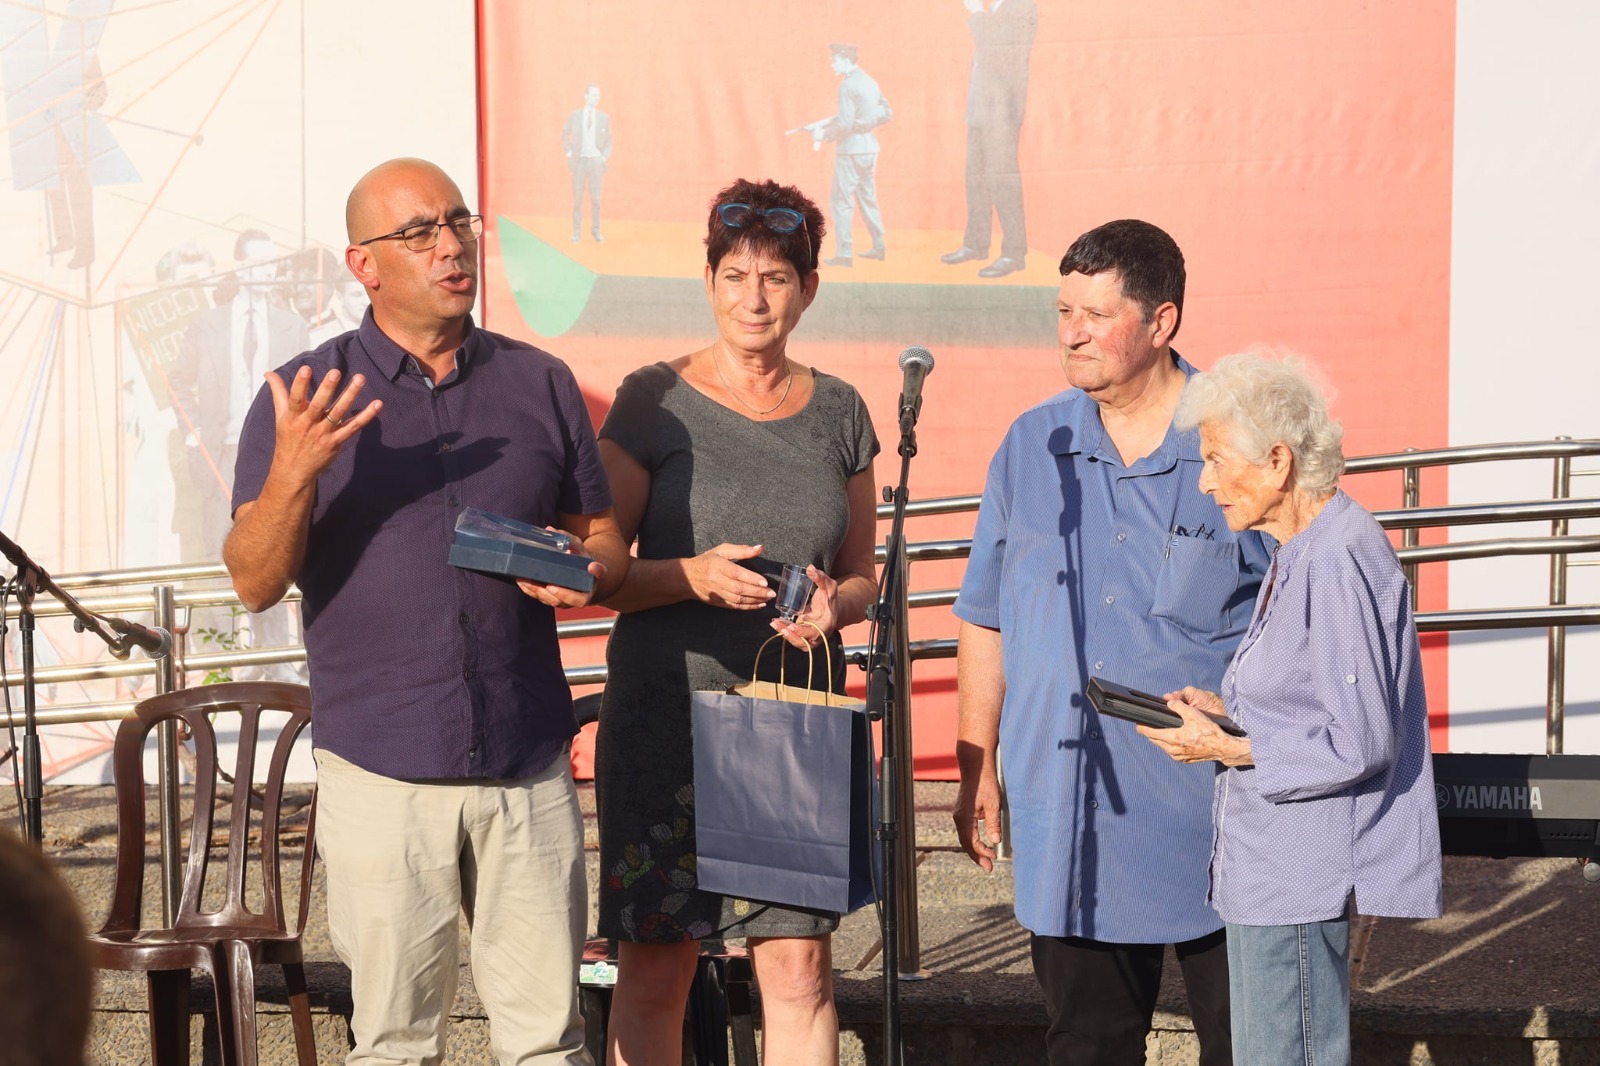 יגאל כהן (משמאל), מנכ"ל בית לוחמי הגטאות, מברך את עדנה סולודר יחד עם נגה בוטנסקי וניר מאיר